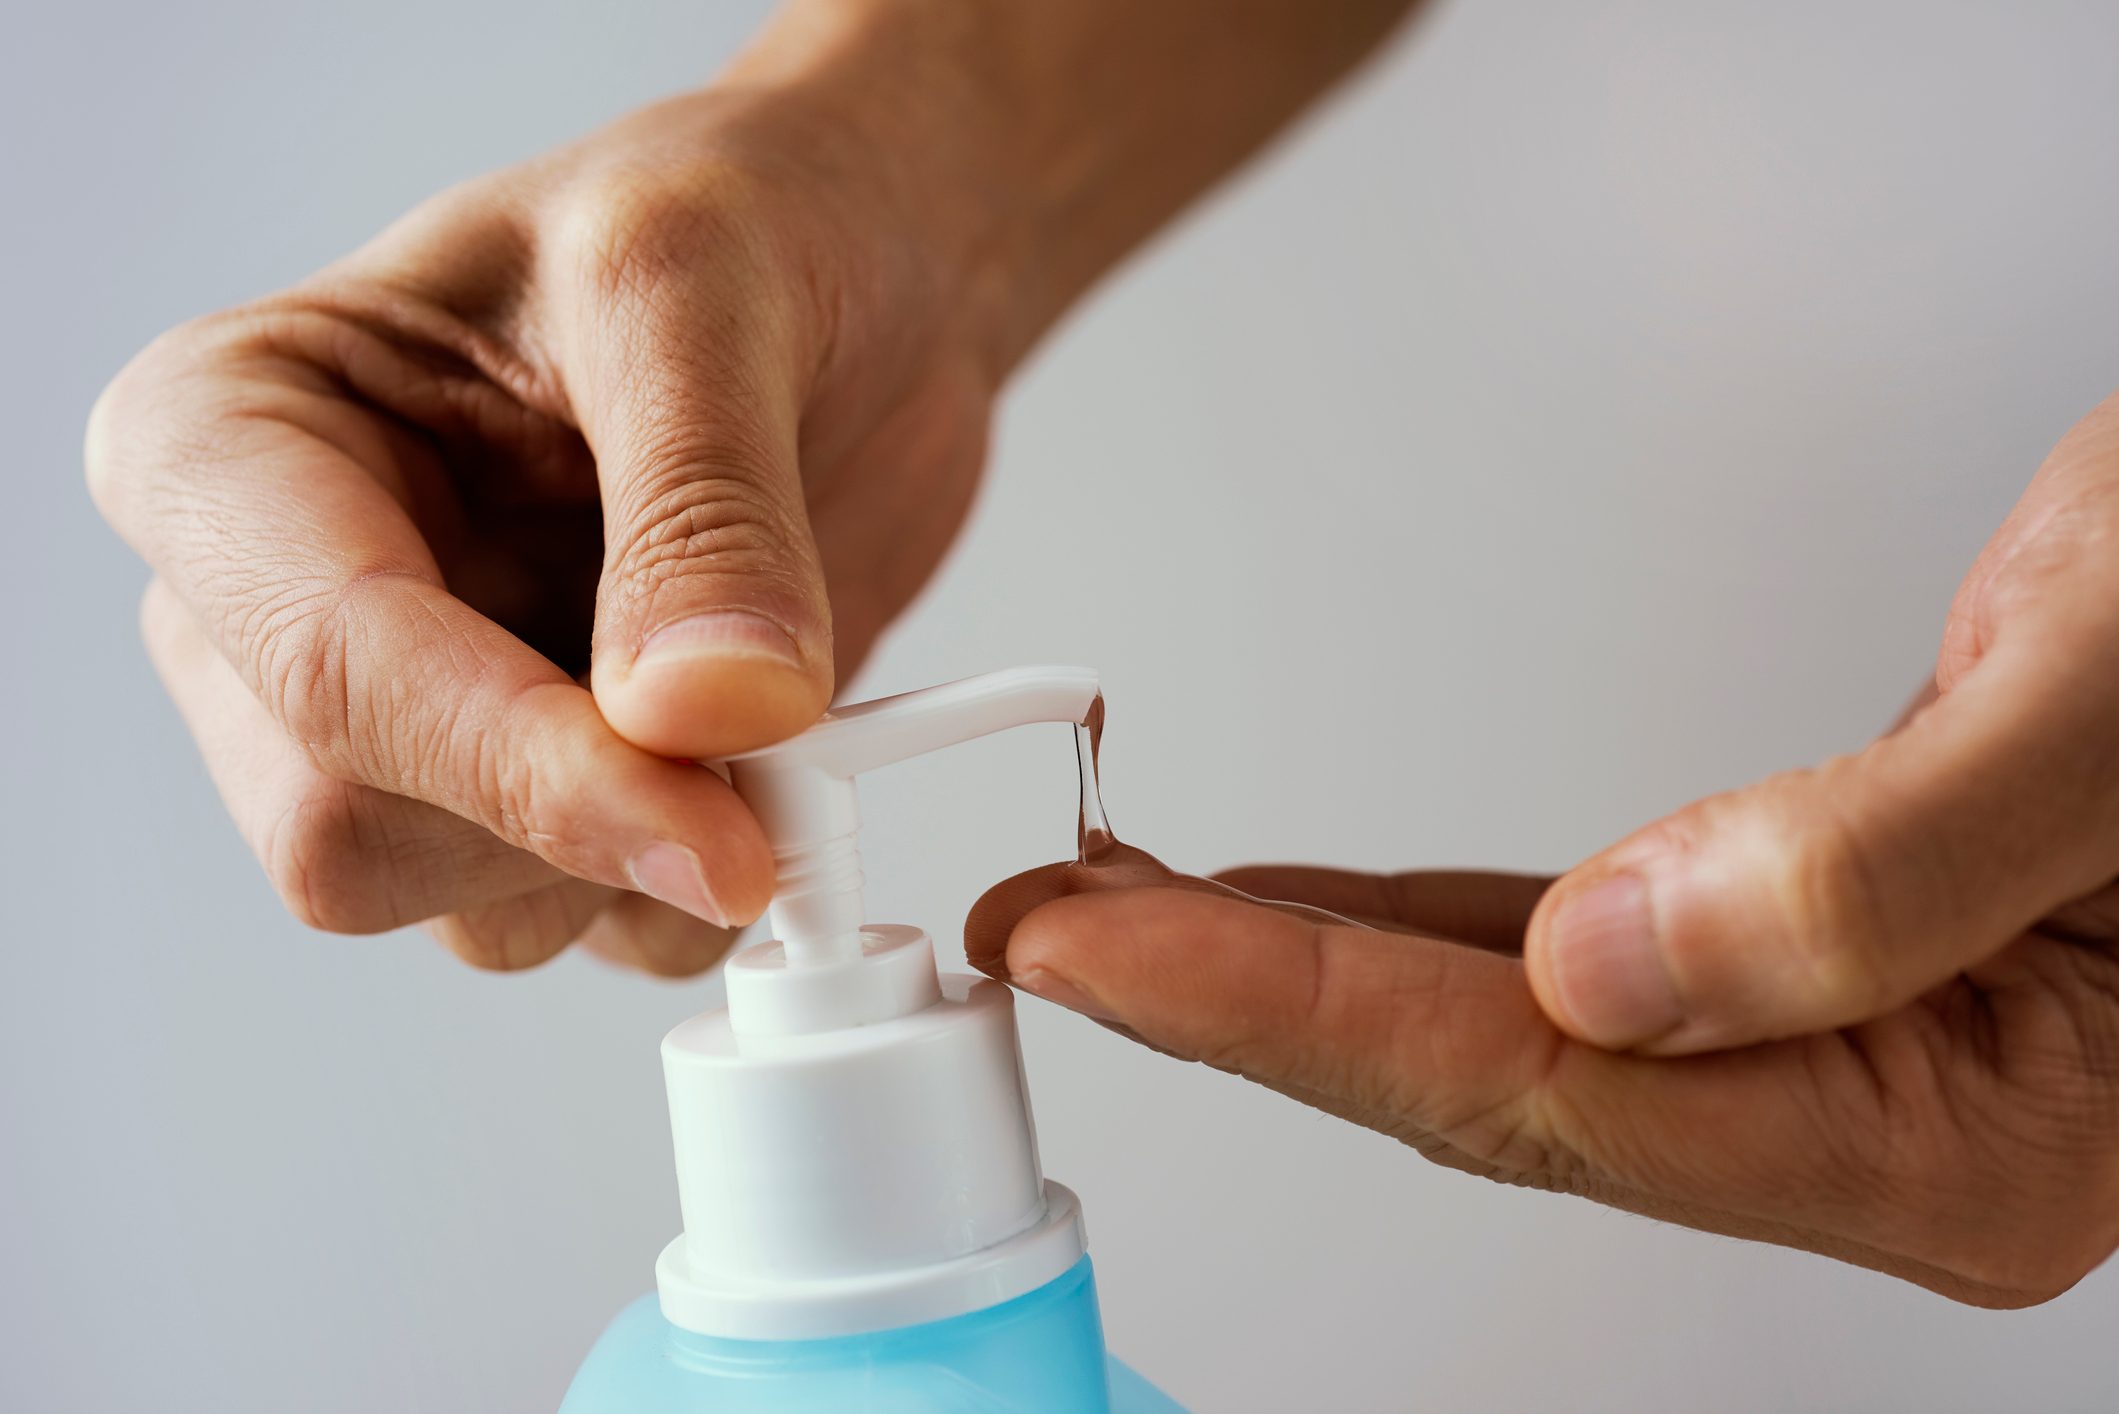 Does Hand Sanitizer Kill Viruses?